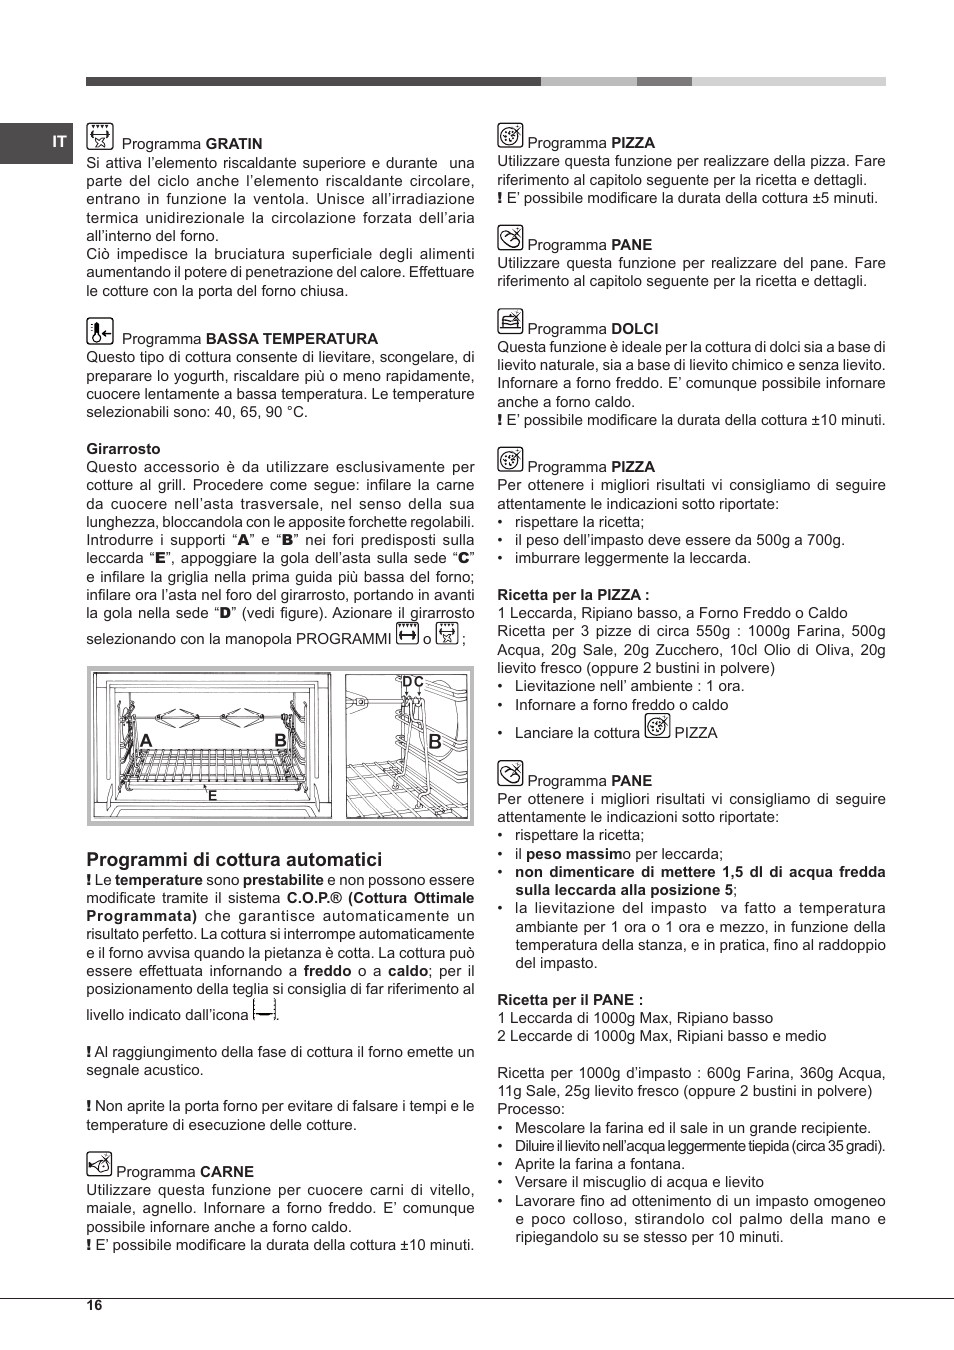 Programmi di cottura automatici | Hotpoint Ariston MH 99.1 IX-HA S User  Manual | Page 16 / 76